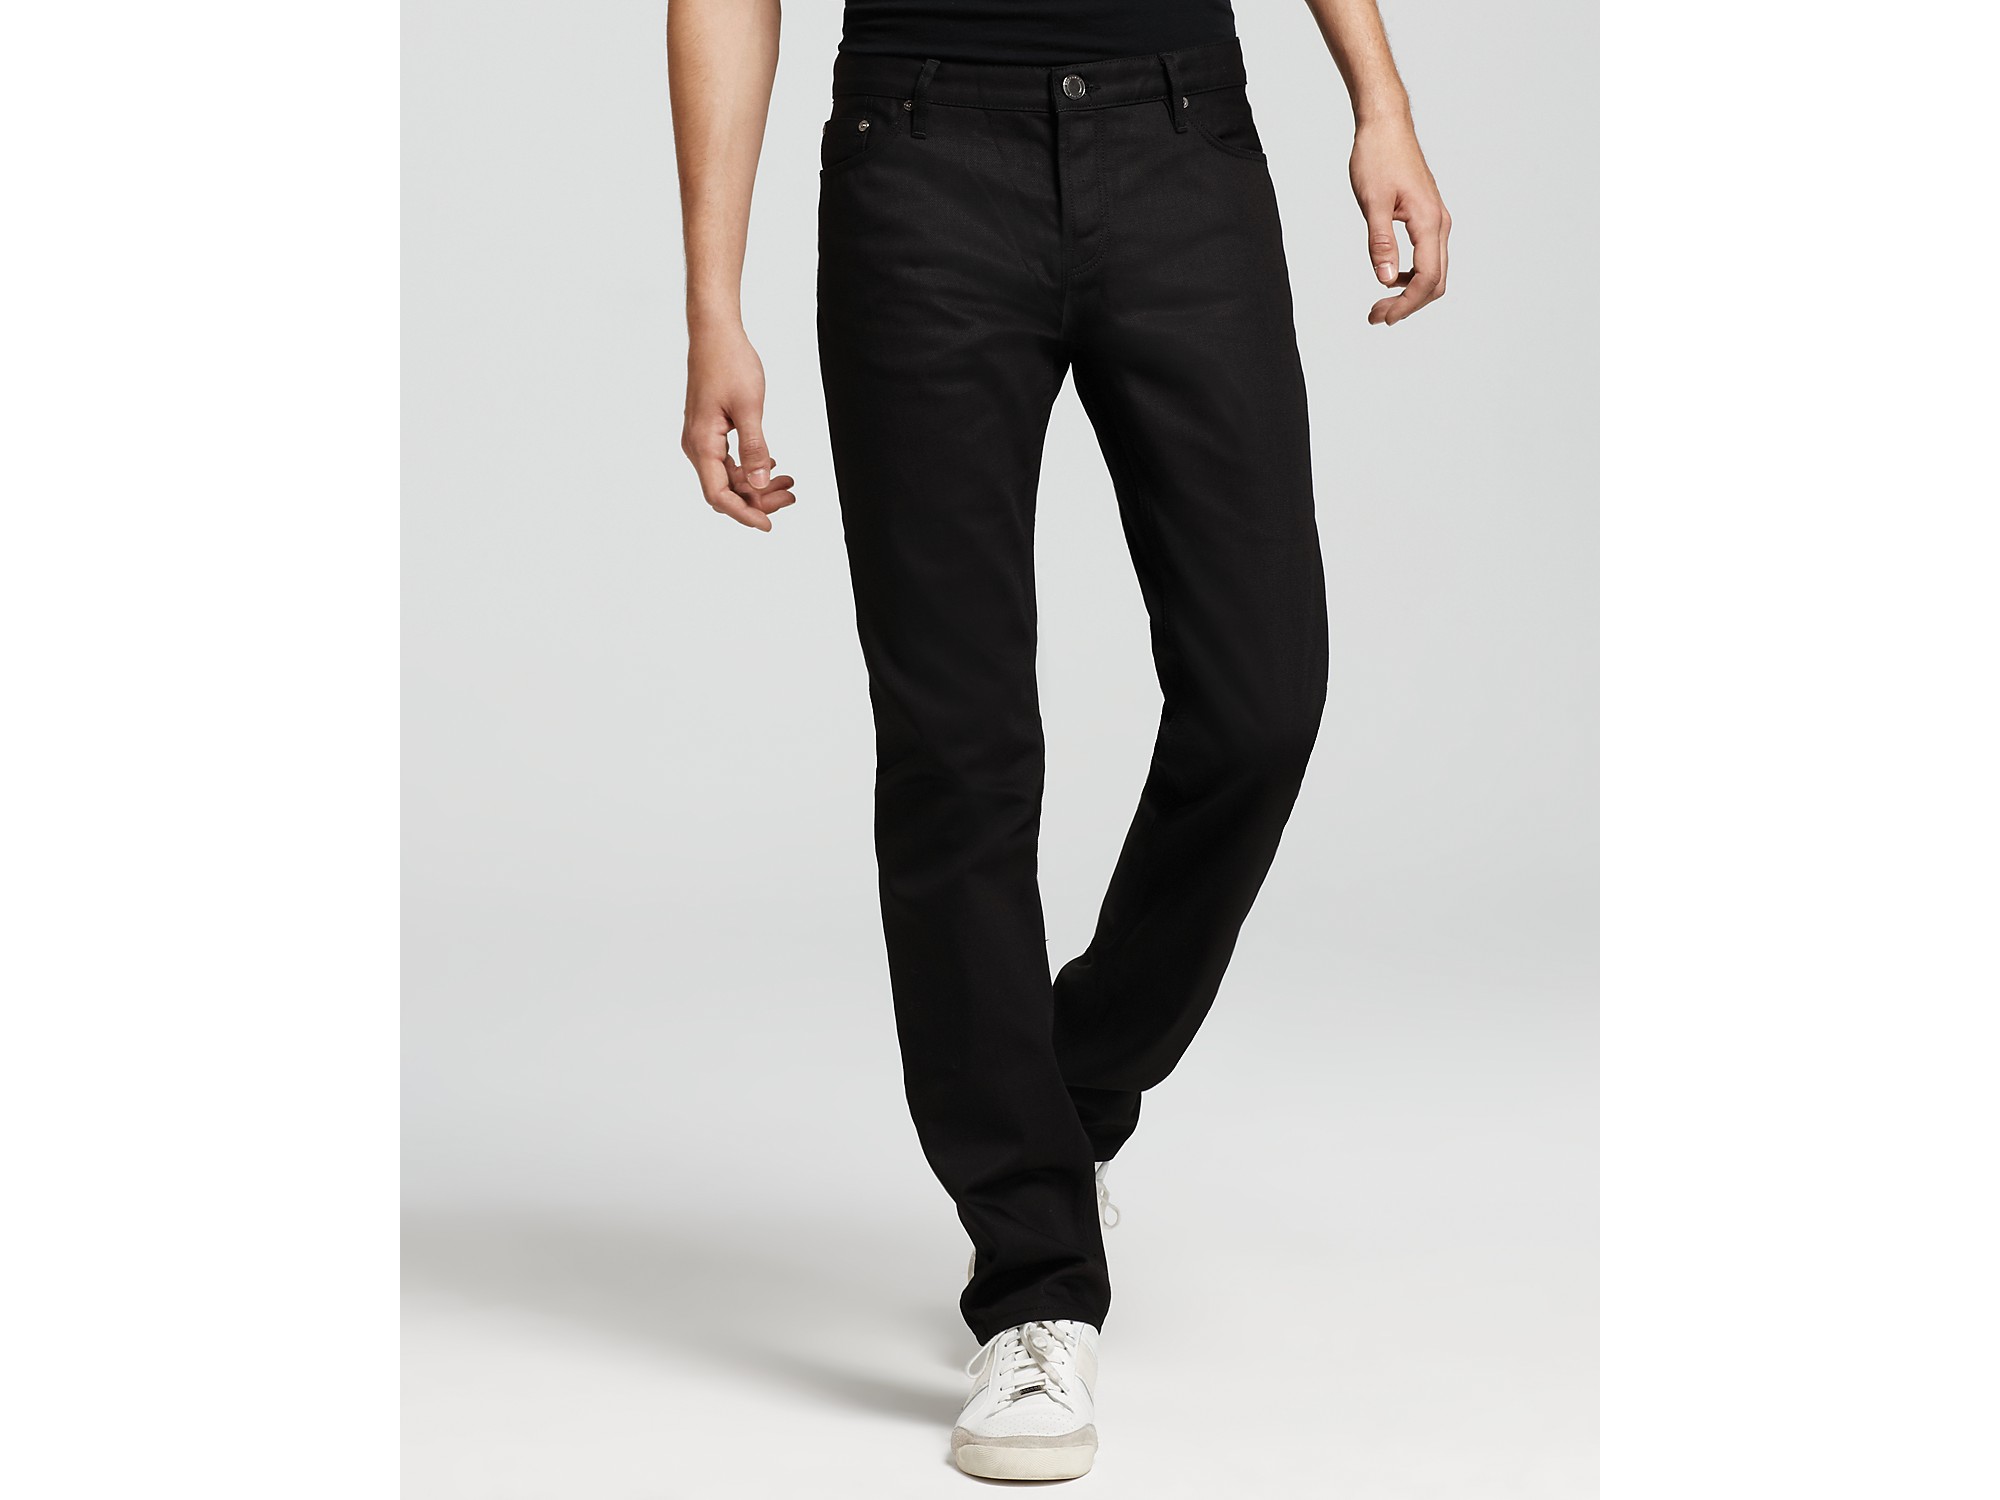 Burberry London Steadman Jeans in Black 